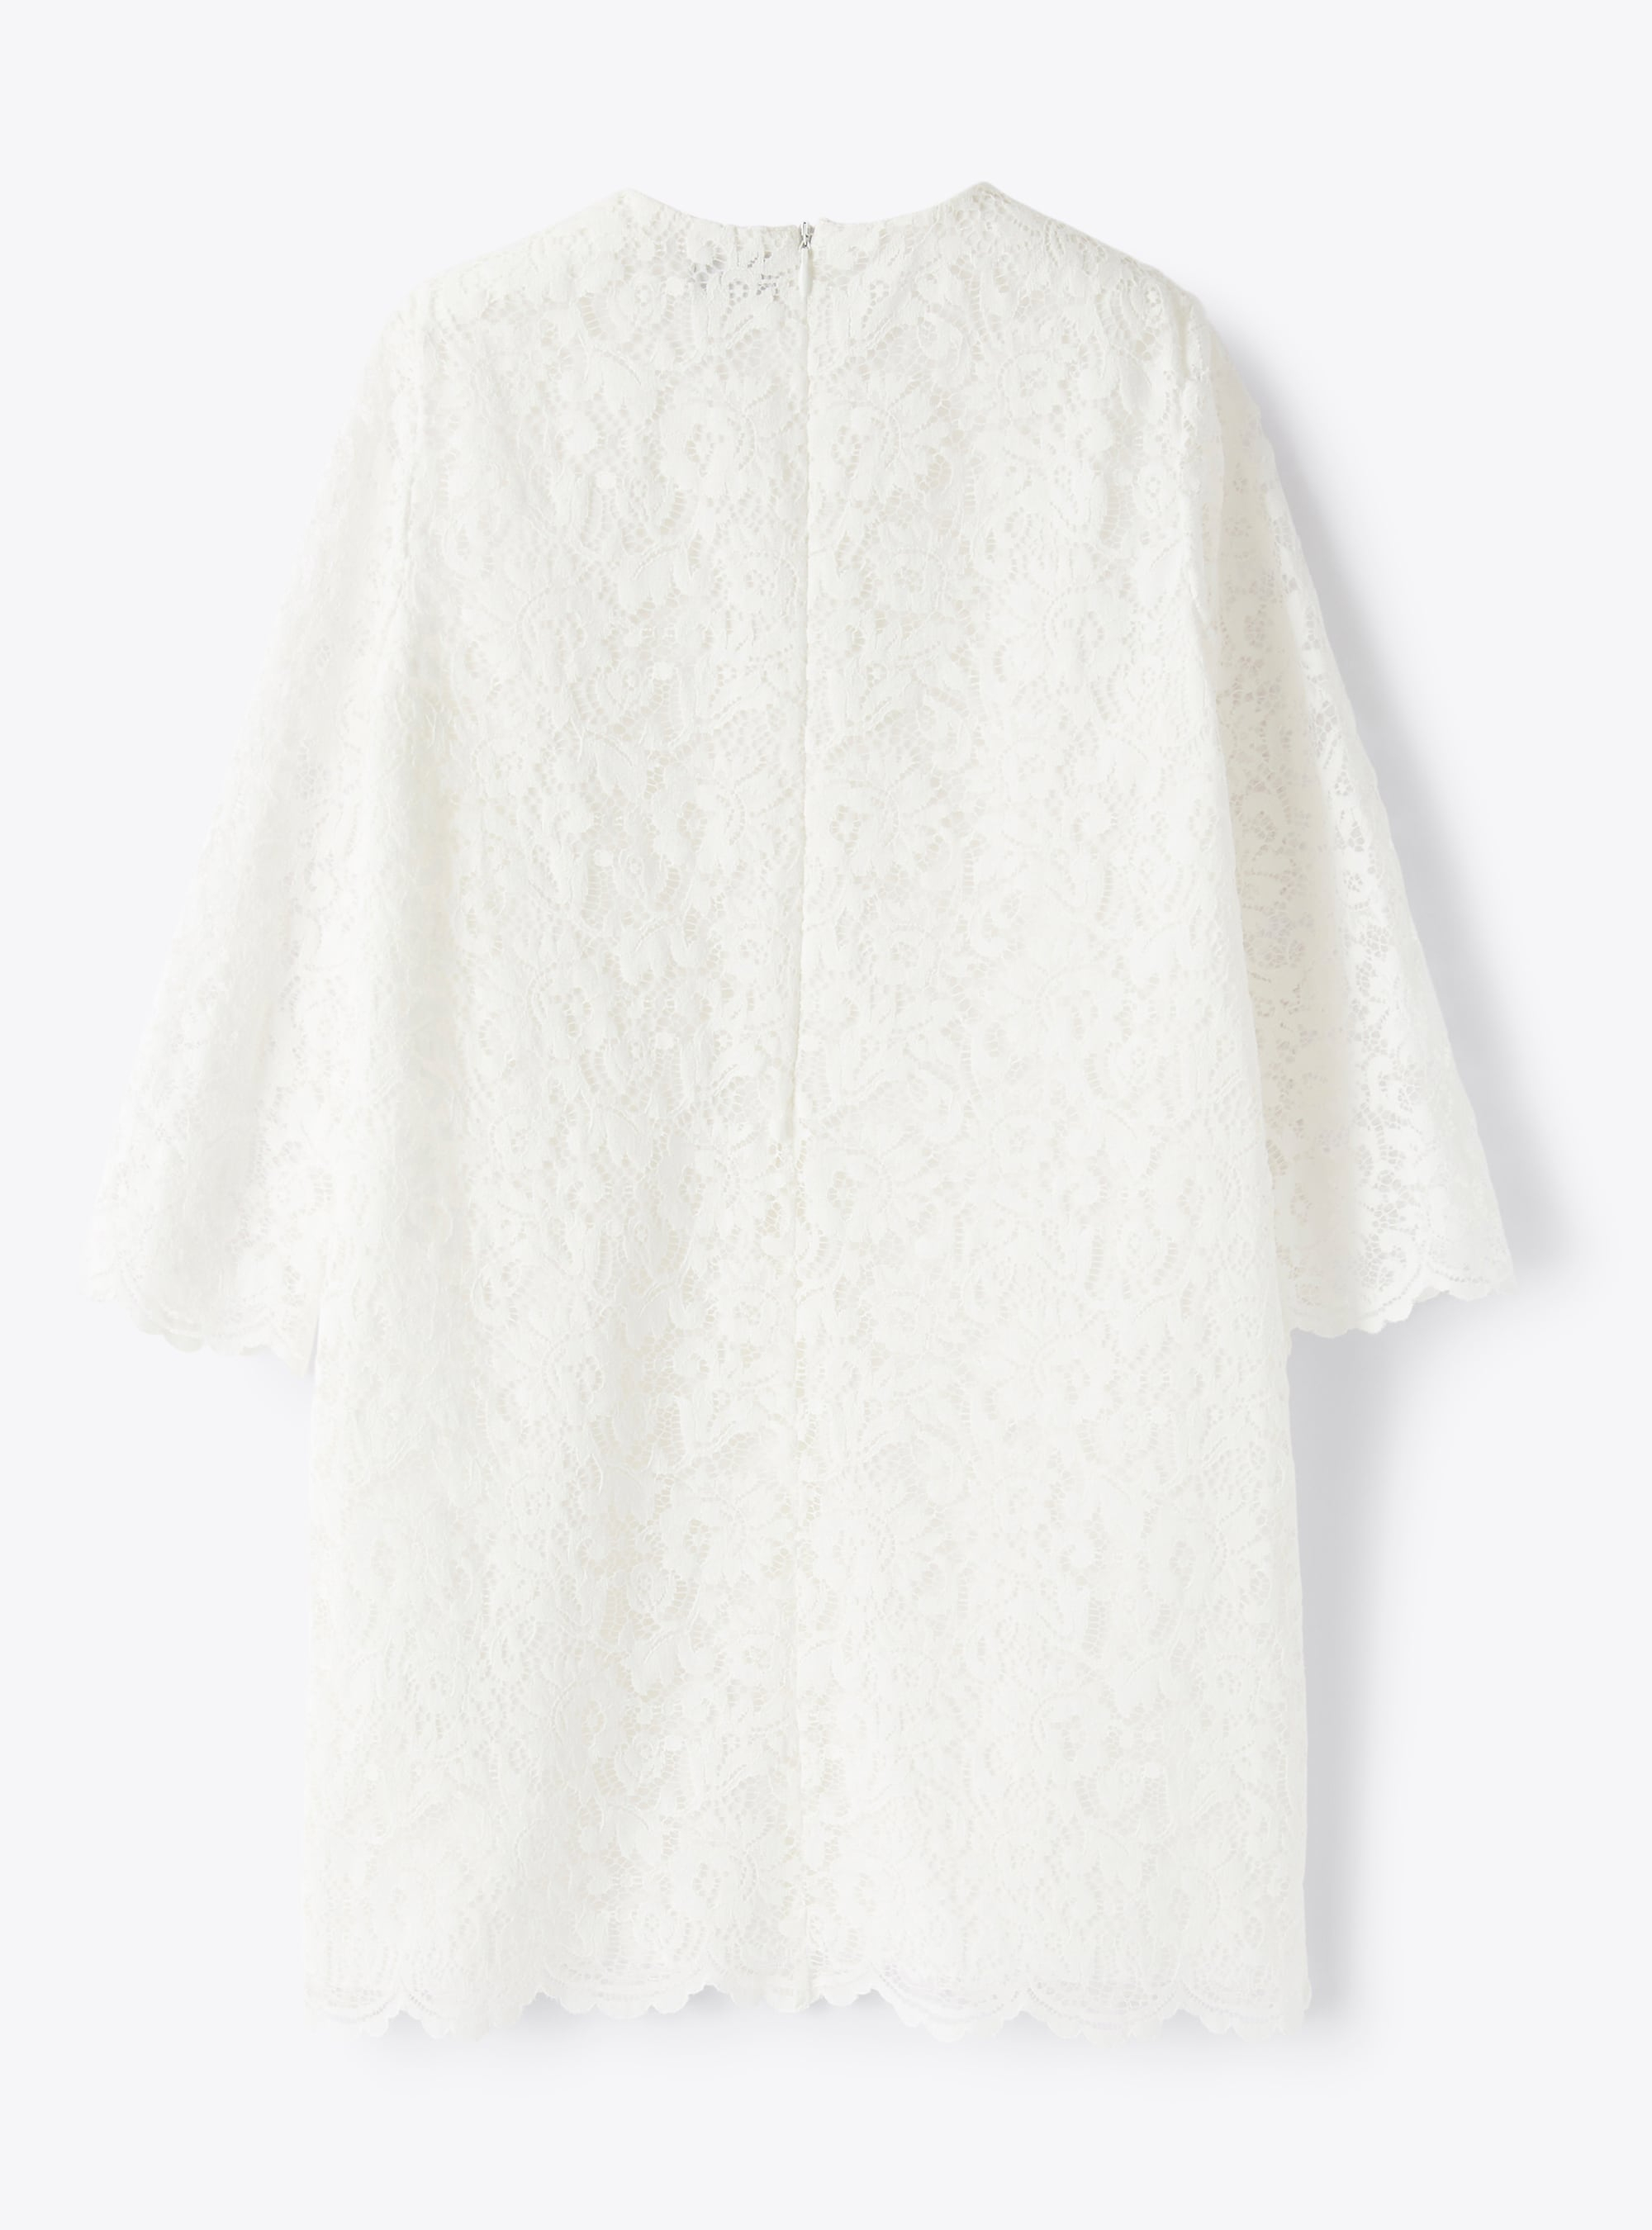 Short A-line dress in cotton lace - White | Il Gufo